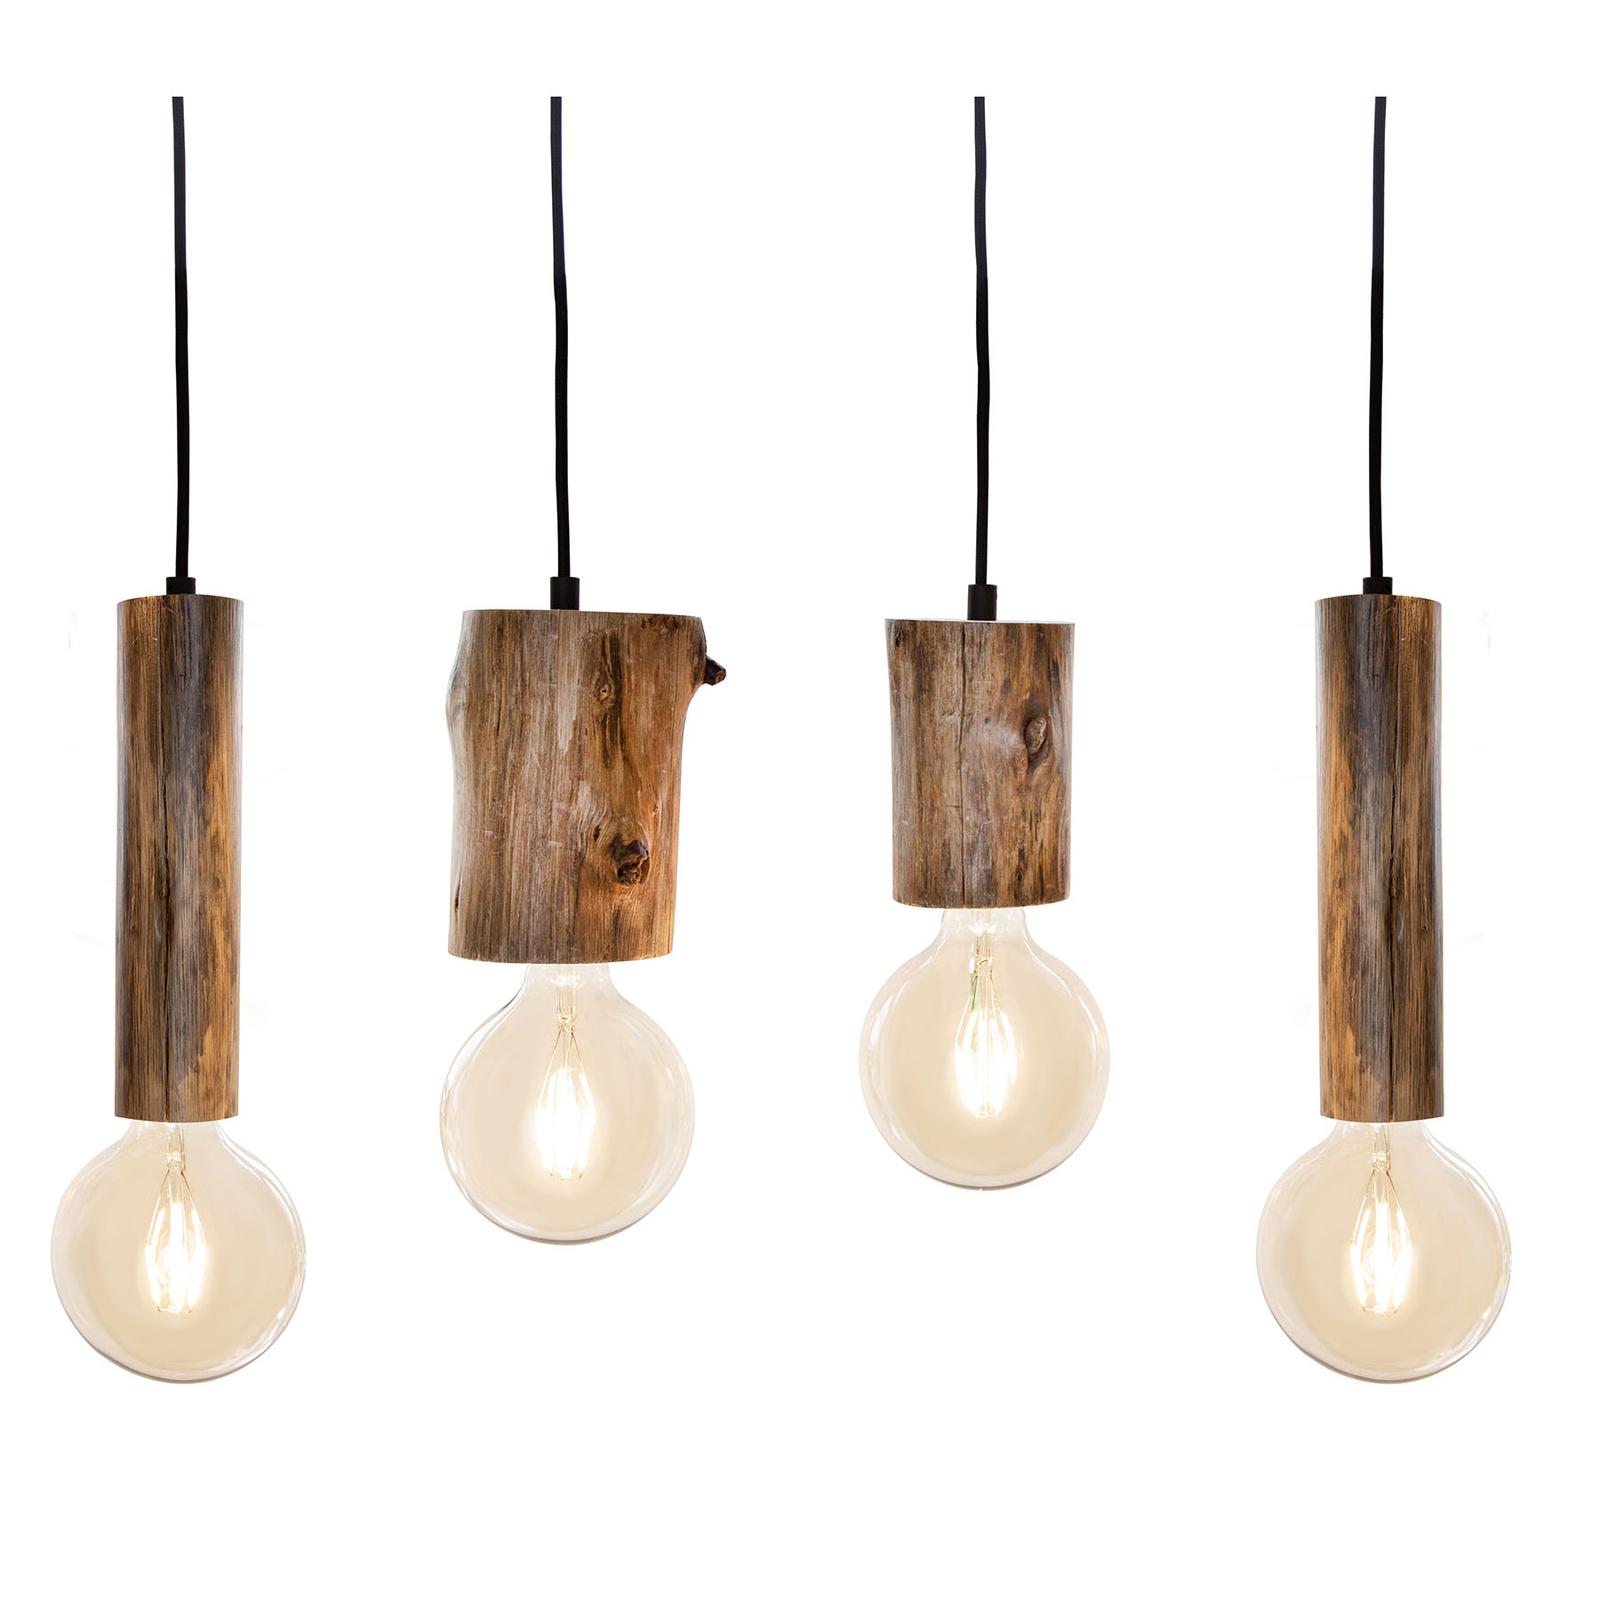 Tronco pendant light with four wooden pendants